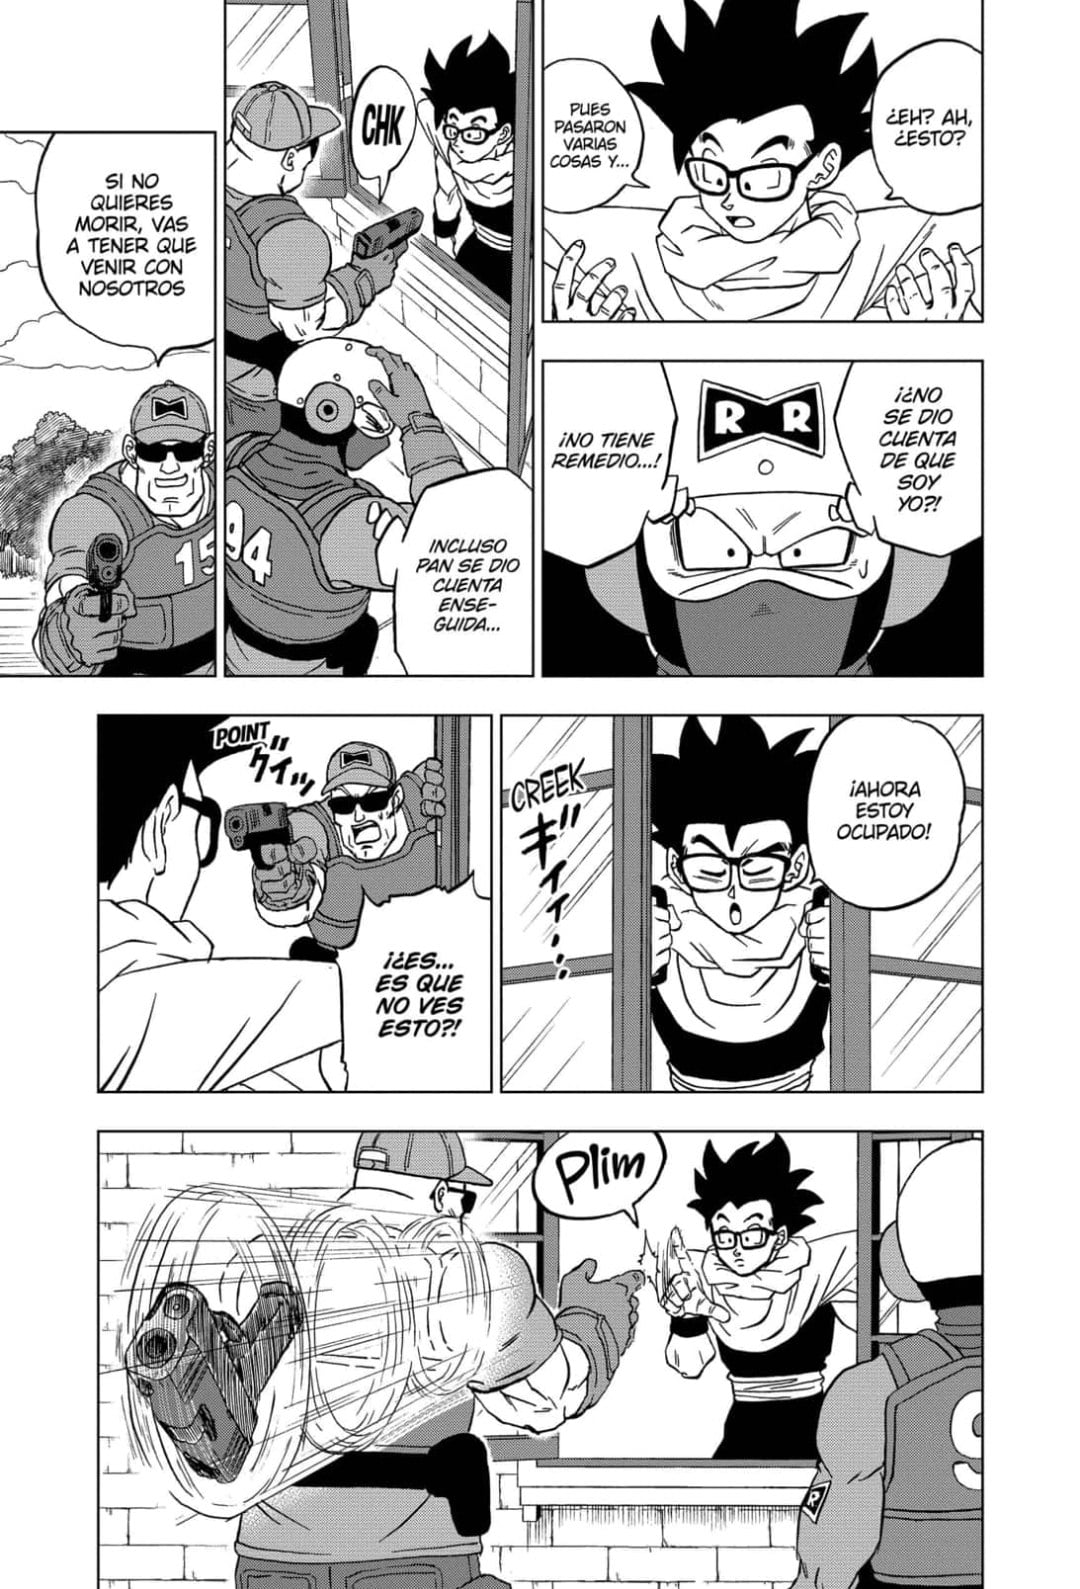 Dragon Ball Super: Filtrado al completo el capítulo 94 del manga